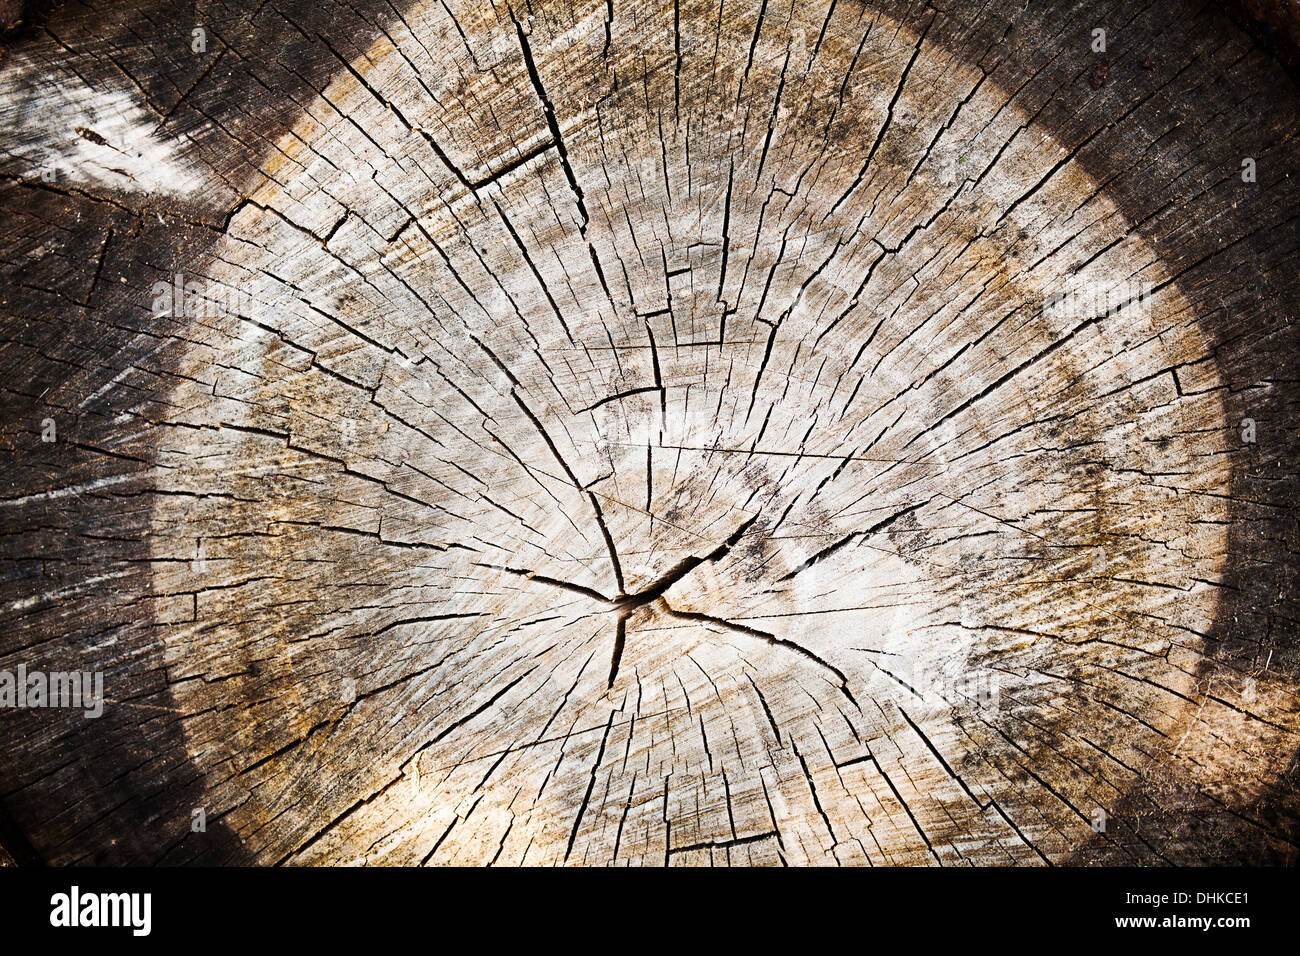 Textura de madera vieja del corte del tronco de un árbol, en primer plano Foto de stock